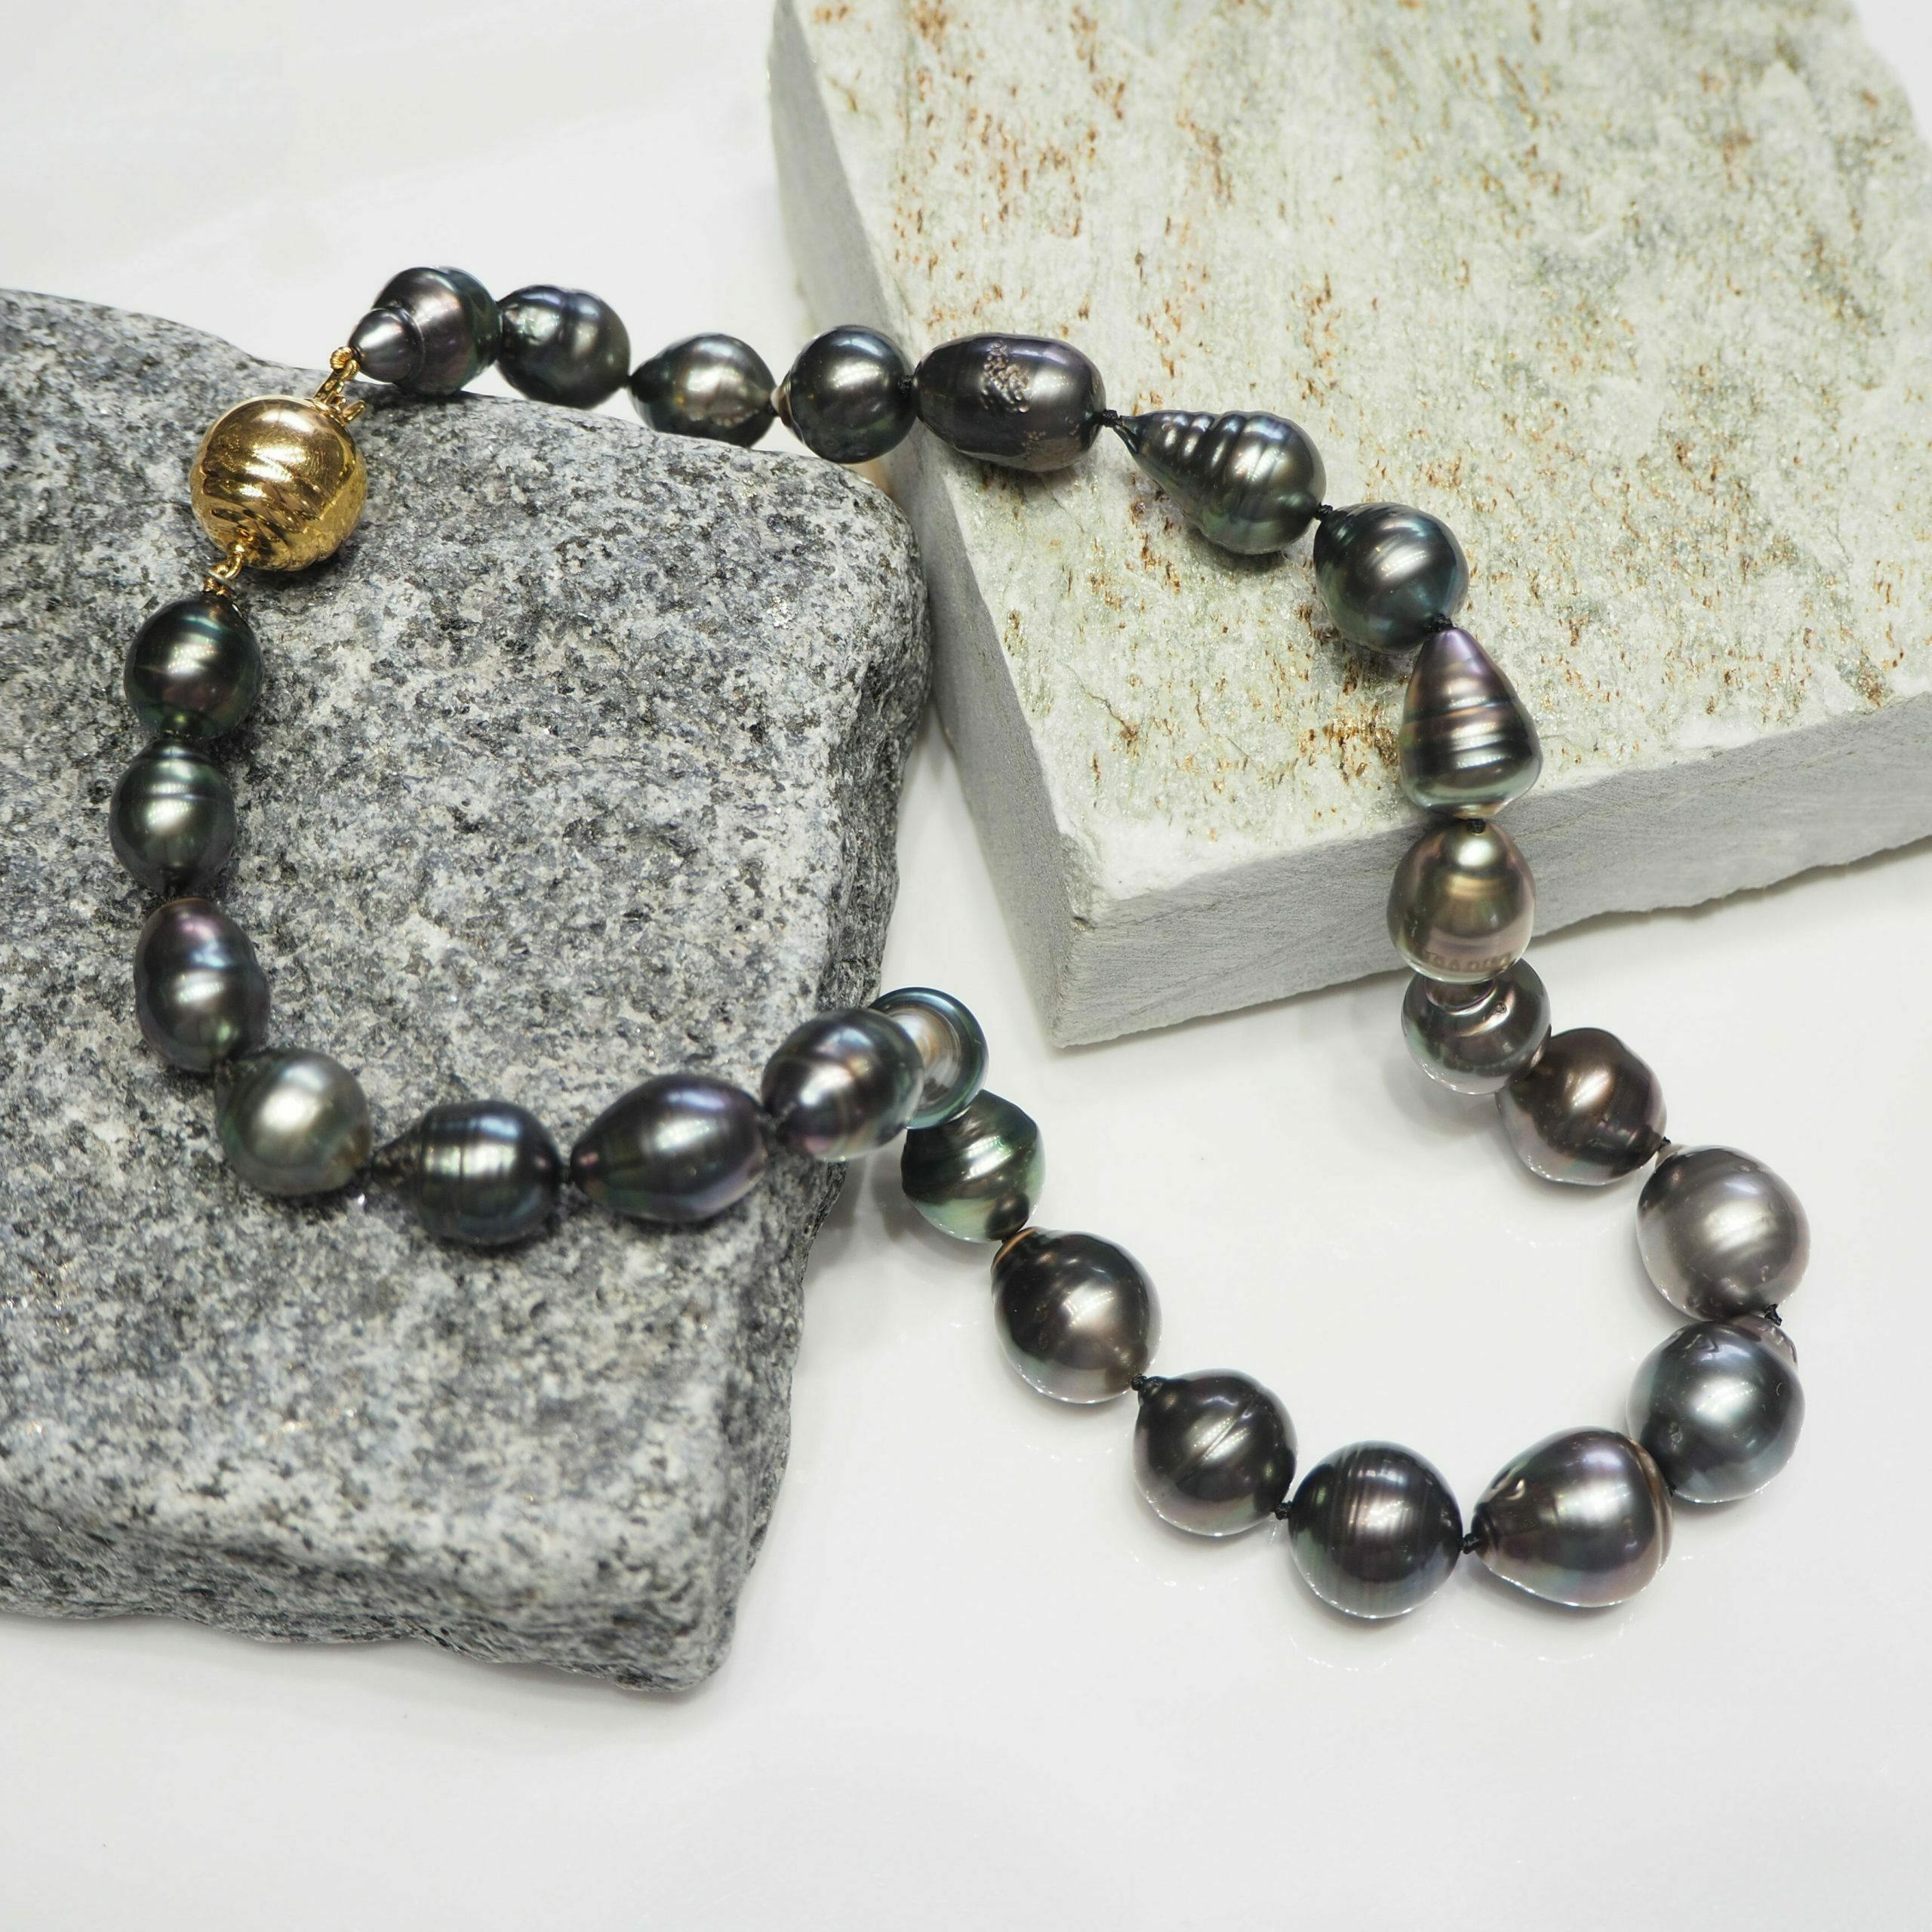 Aggregate 79+ baroque pearl necklace australia latest - POPPY